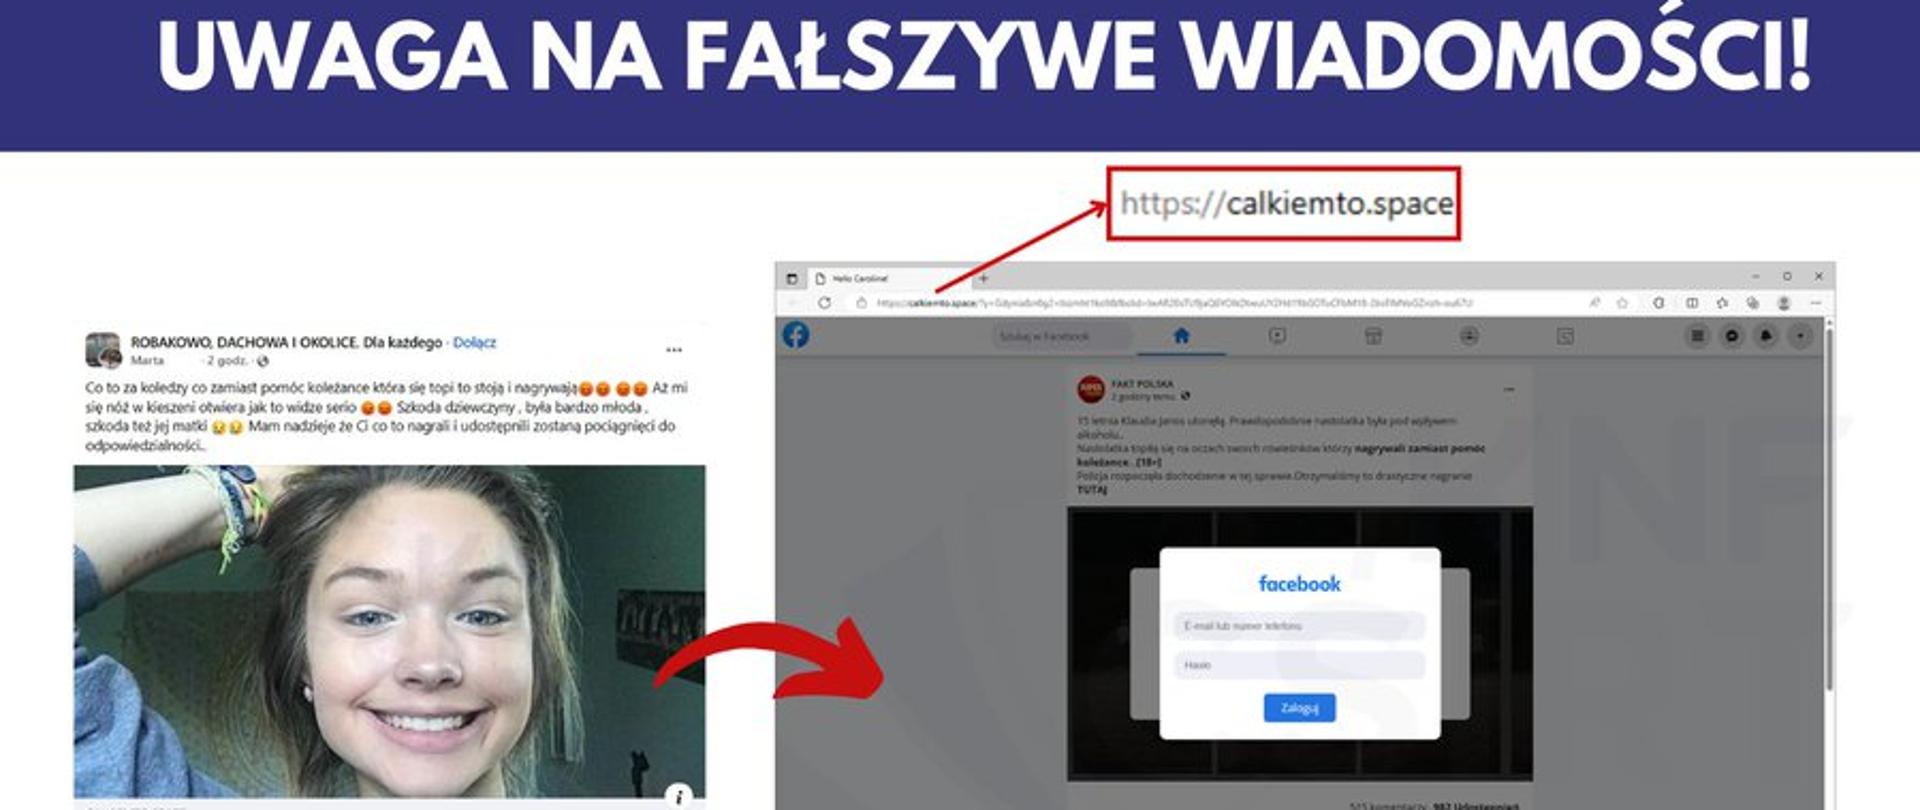 Zdjęcie fałszywego posta na Facebooku ze zdjęciem młodej dziweczynki oraz fałszywego panelu logowania na FB